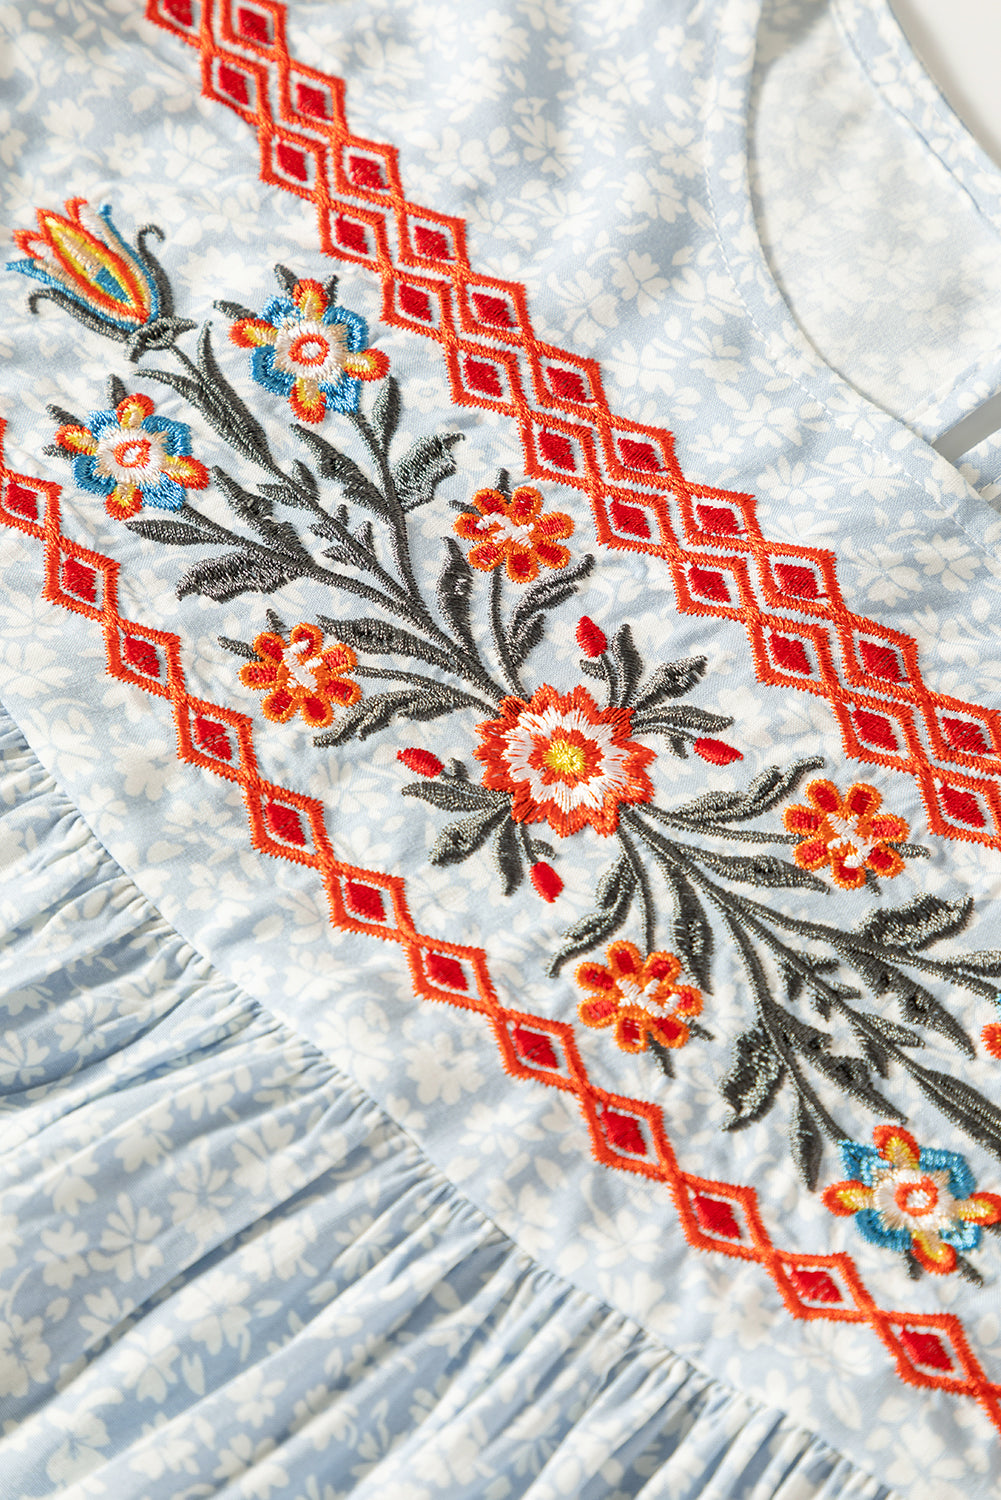 Himmelblaue Boho-Bluse mit besticktem Blumendruck und Flatterärmeln